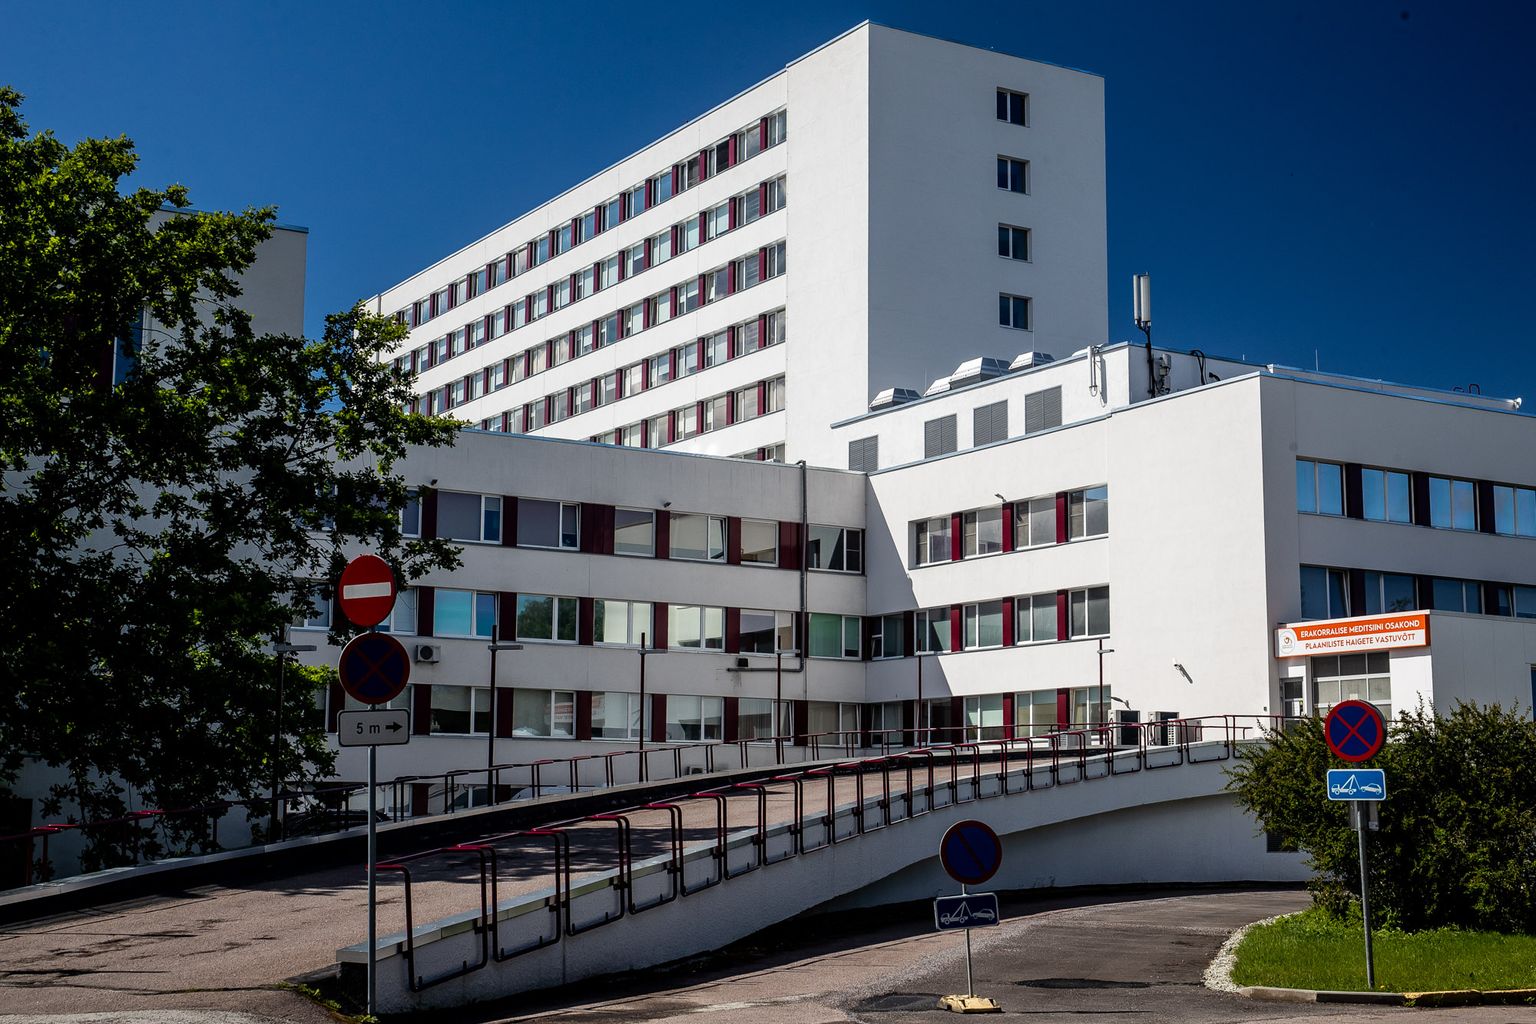 Ляэне-Таллиннская центральная больница.